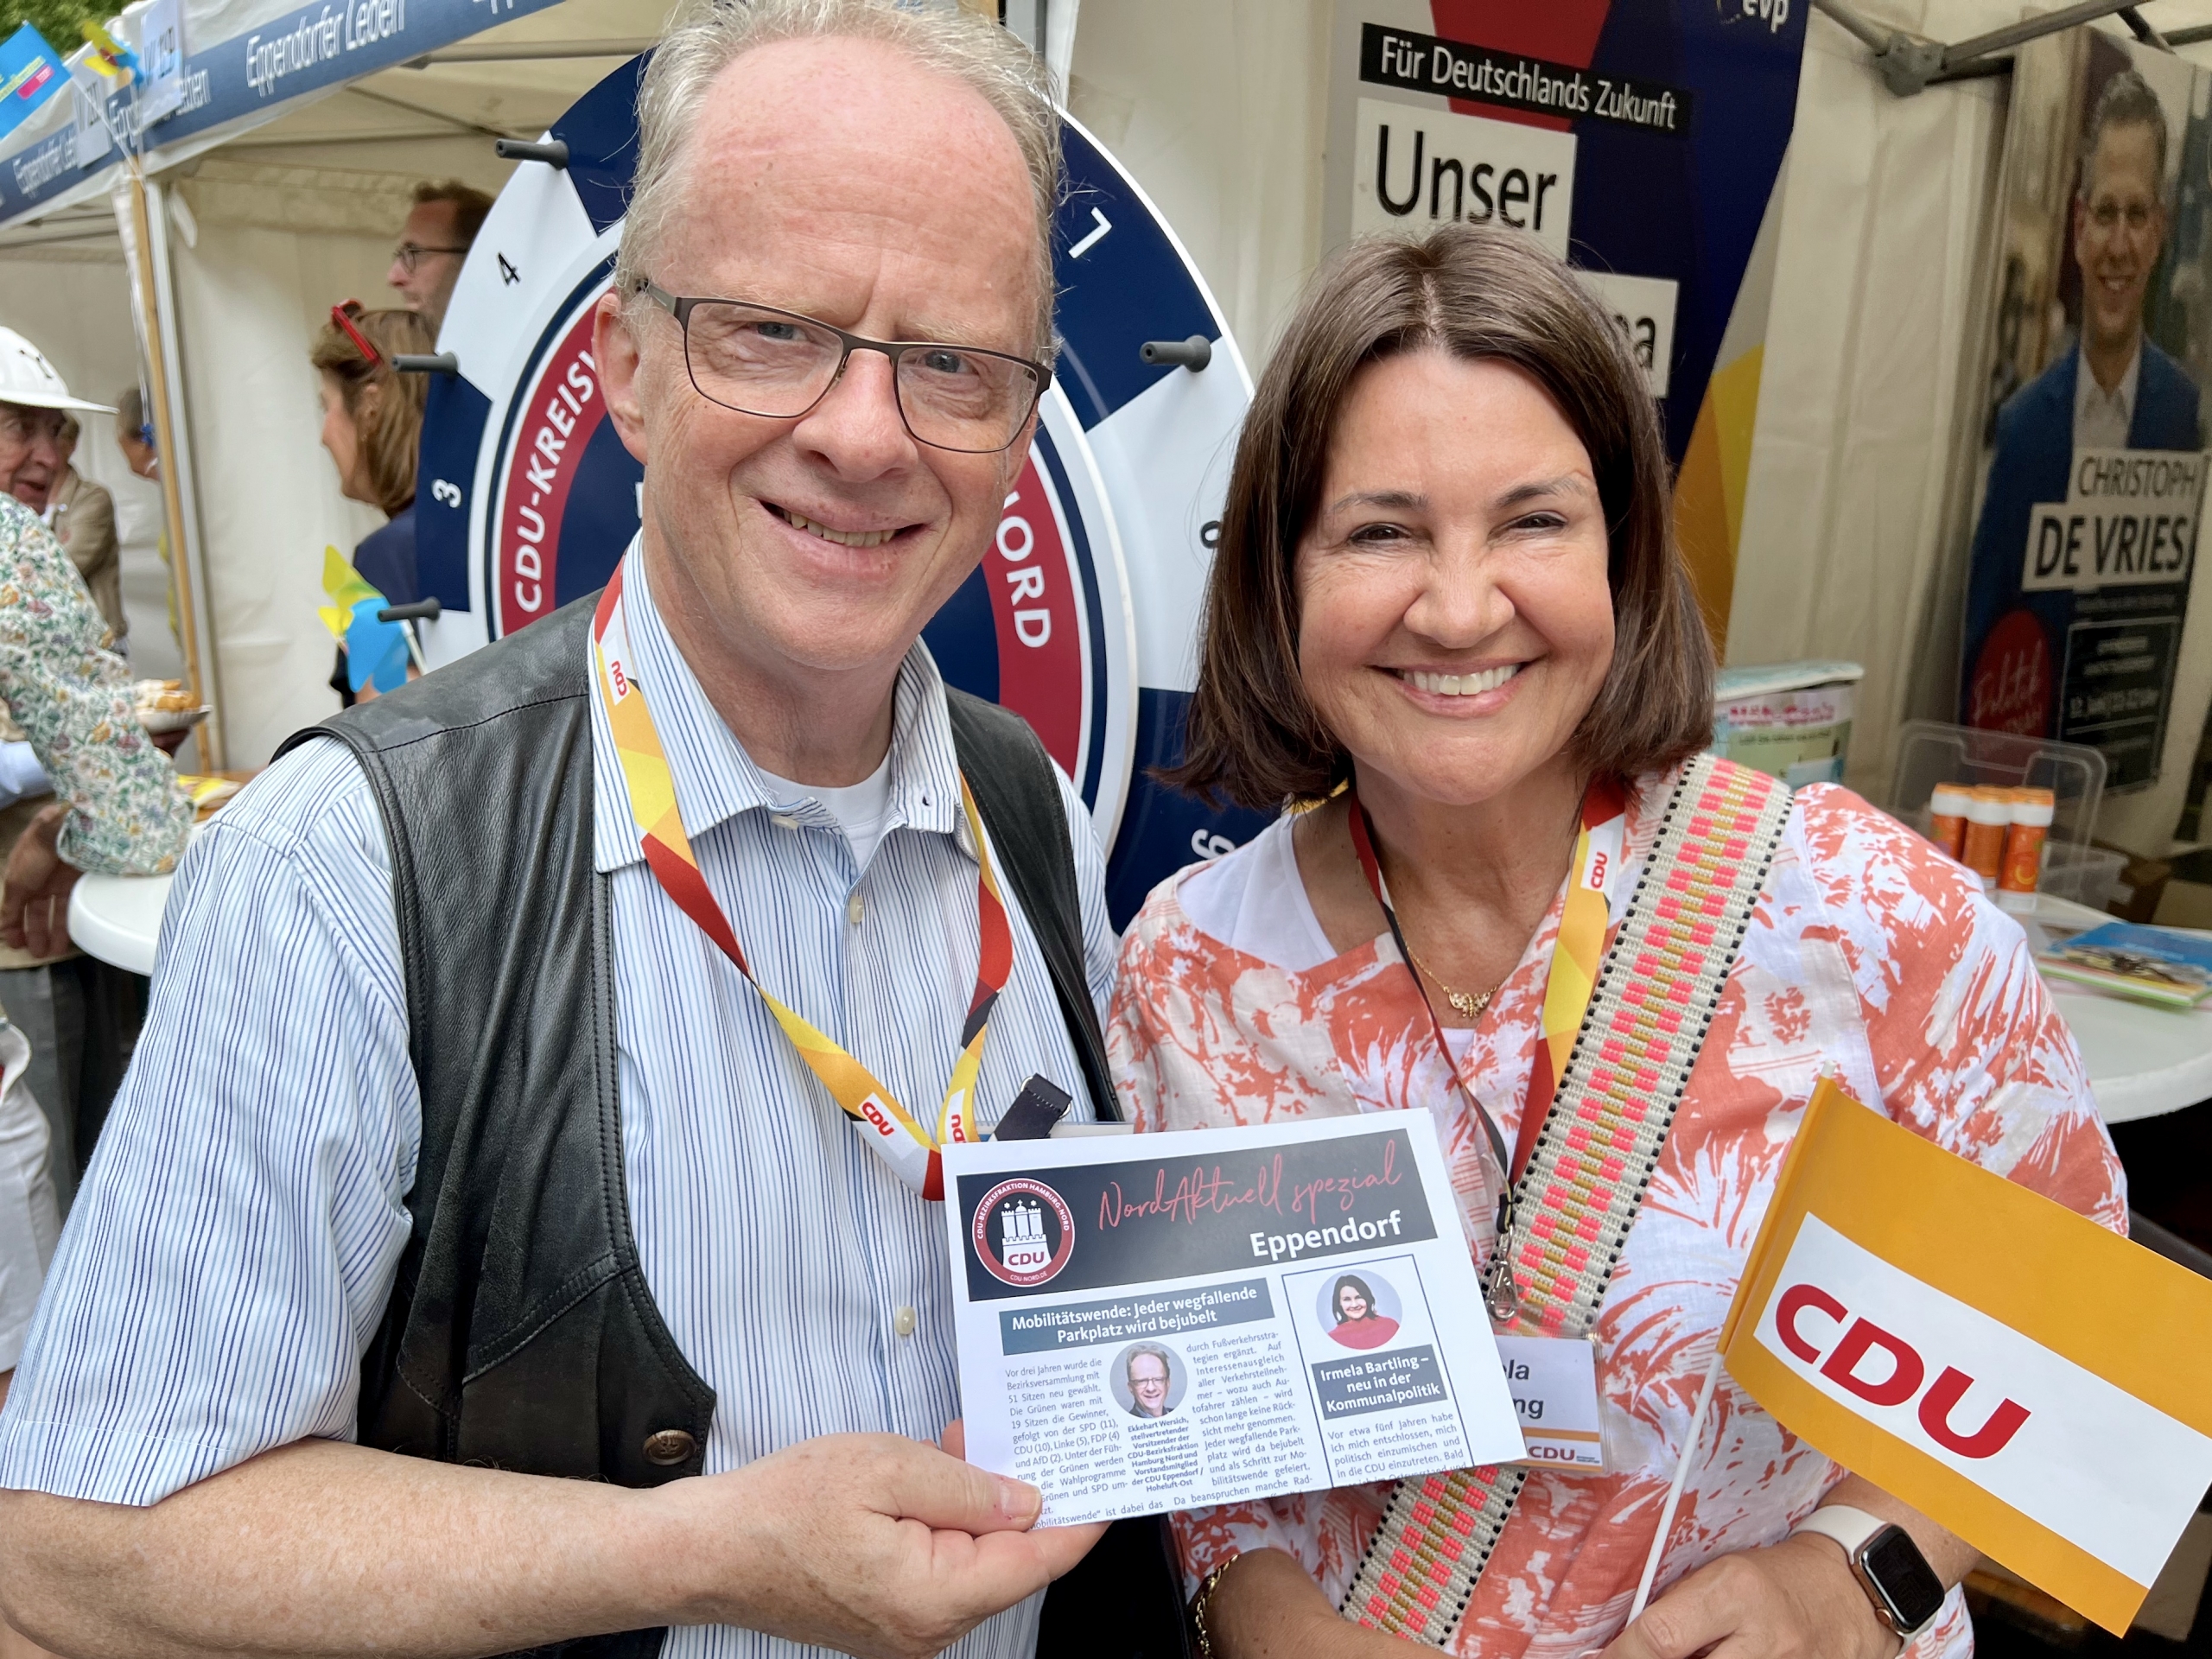 Ekkehart Wersich und Irmela Bartling freuen sich über die vielen Besucher am CDU-Stand.